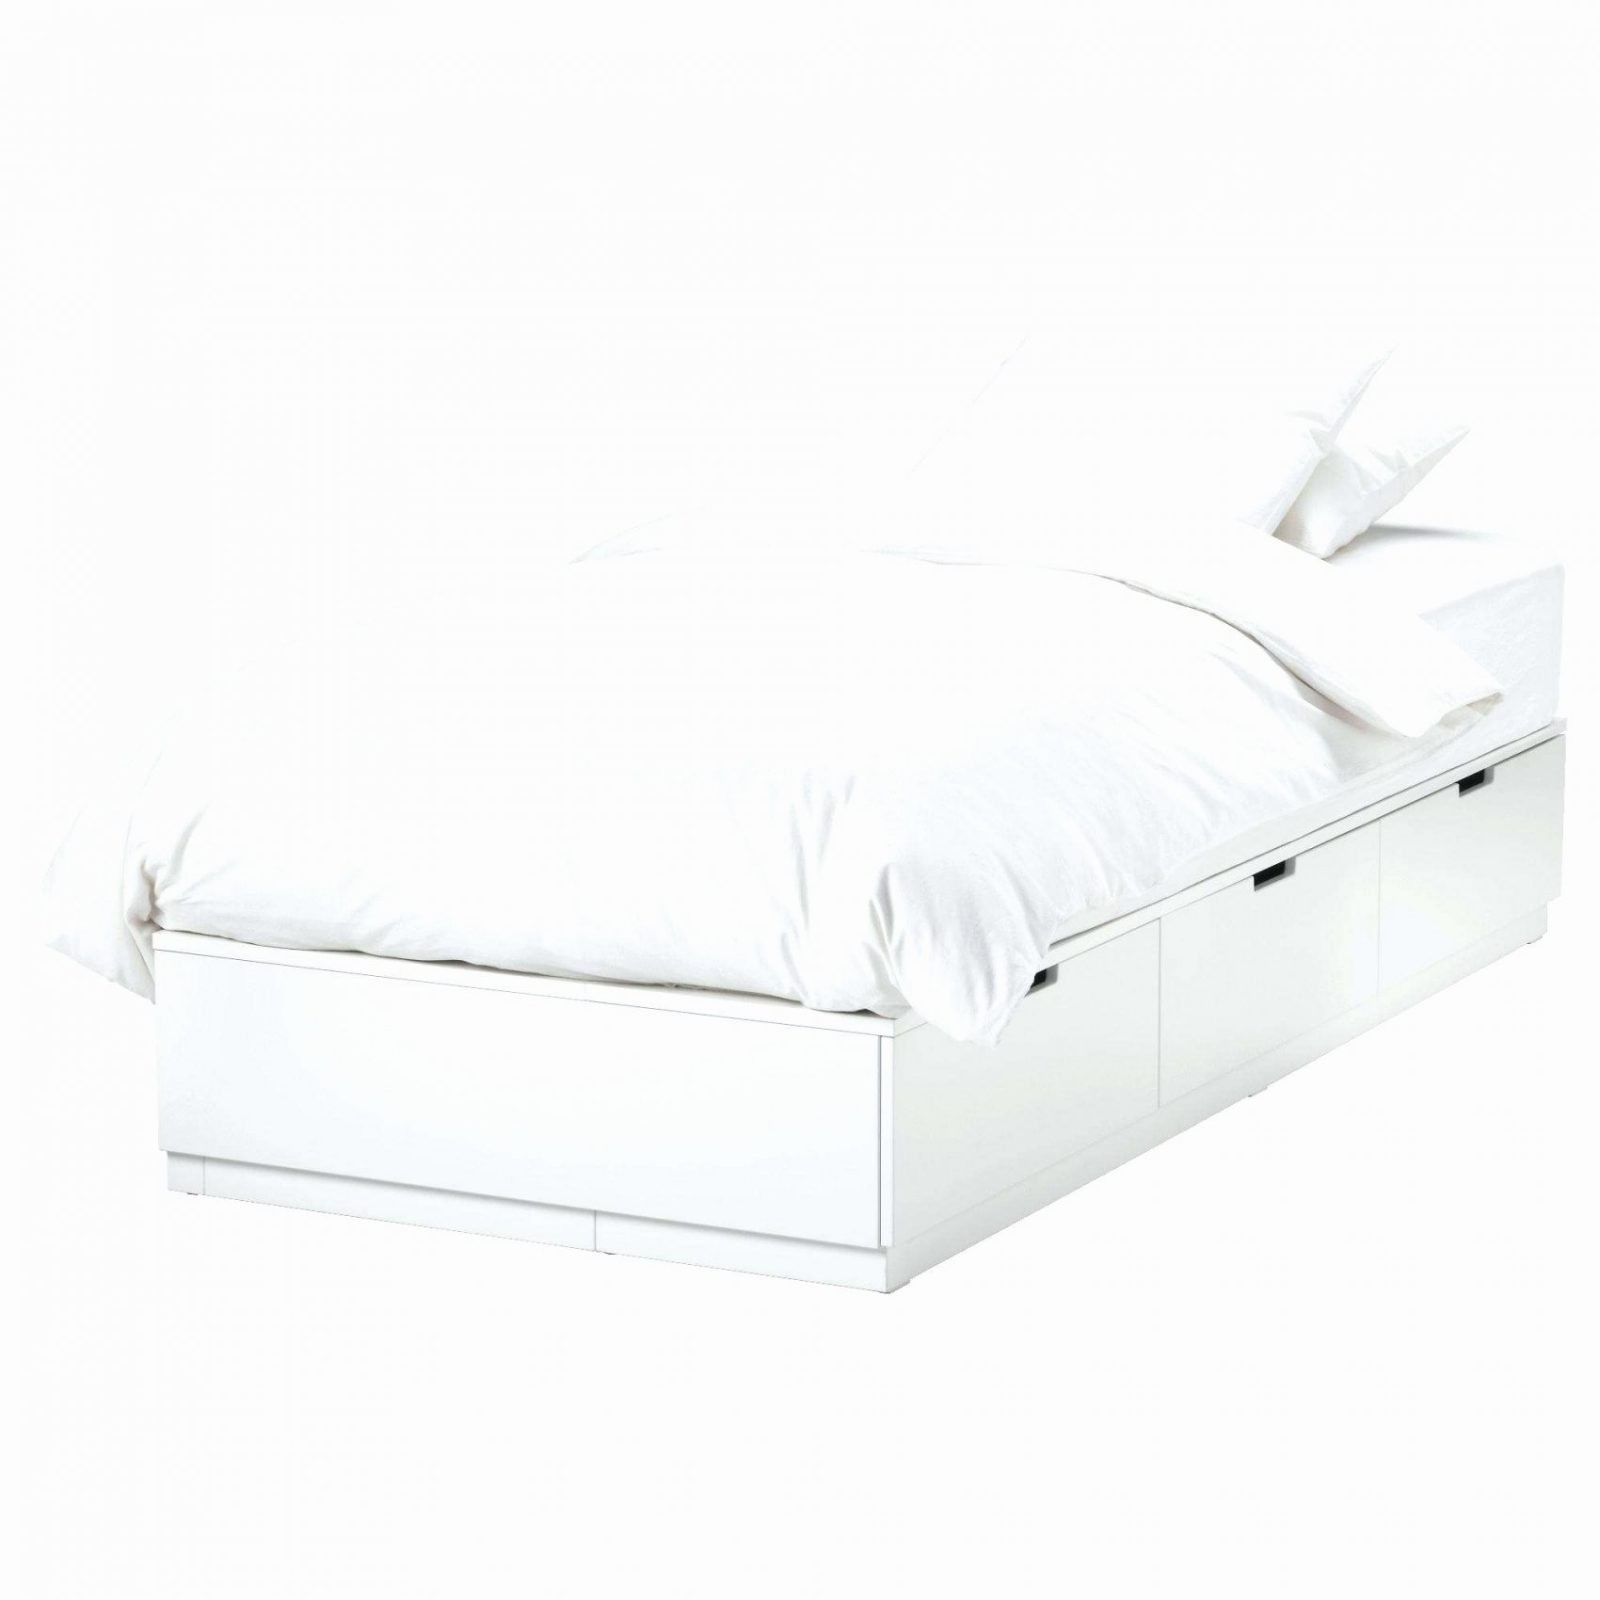 Matratze 120×200 Dänisches Bettenlager Elegant Bett 120×200 Ikea Neu von Matratze 120X200 Dänisches Bettenlager Bild